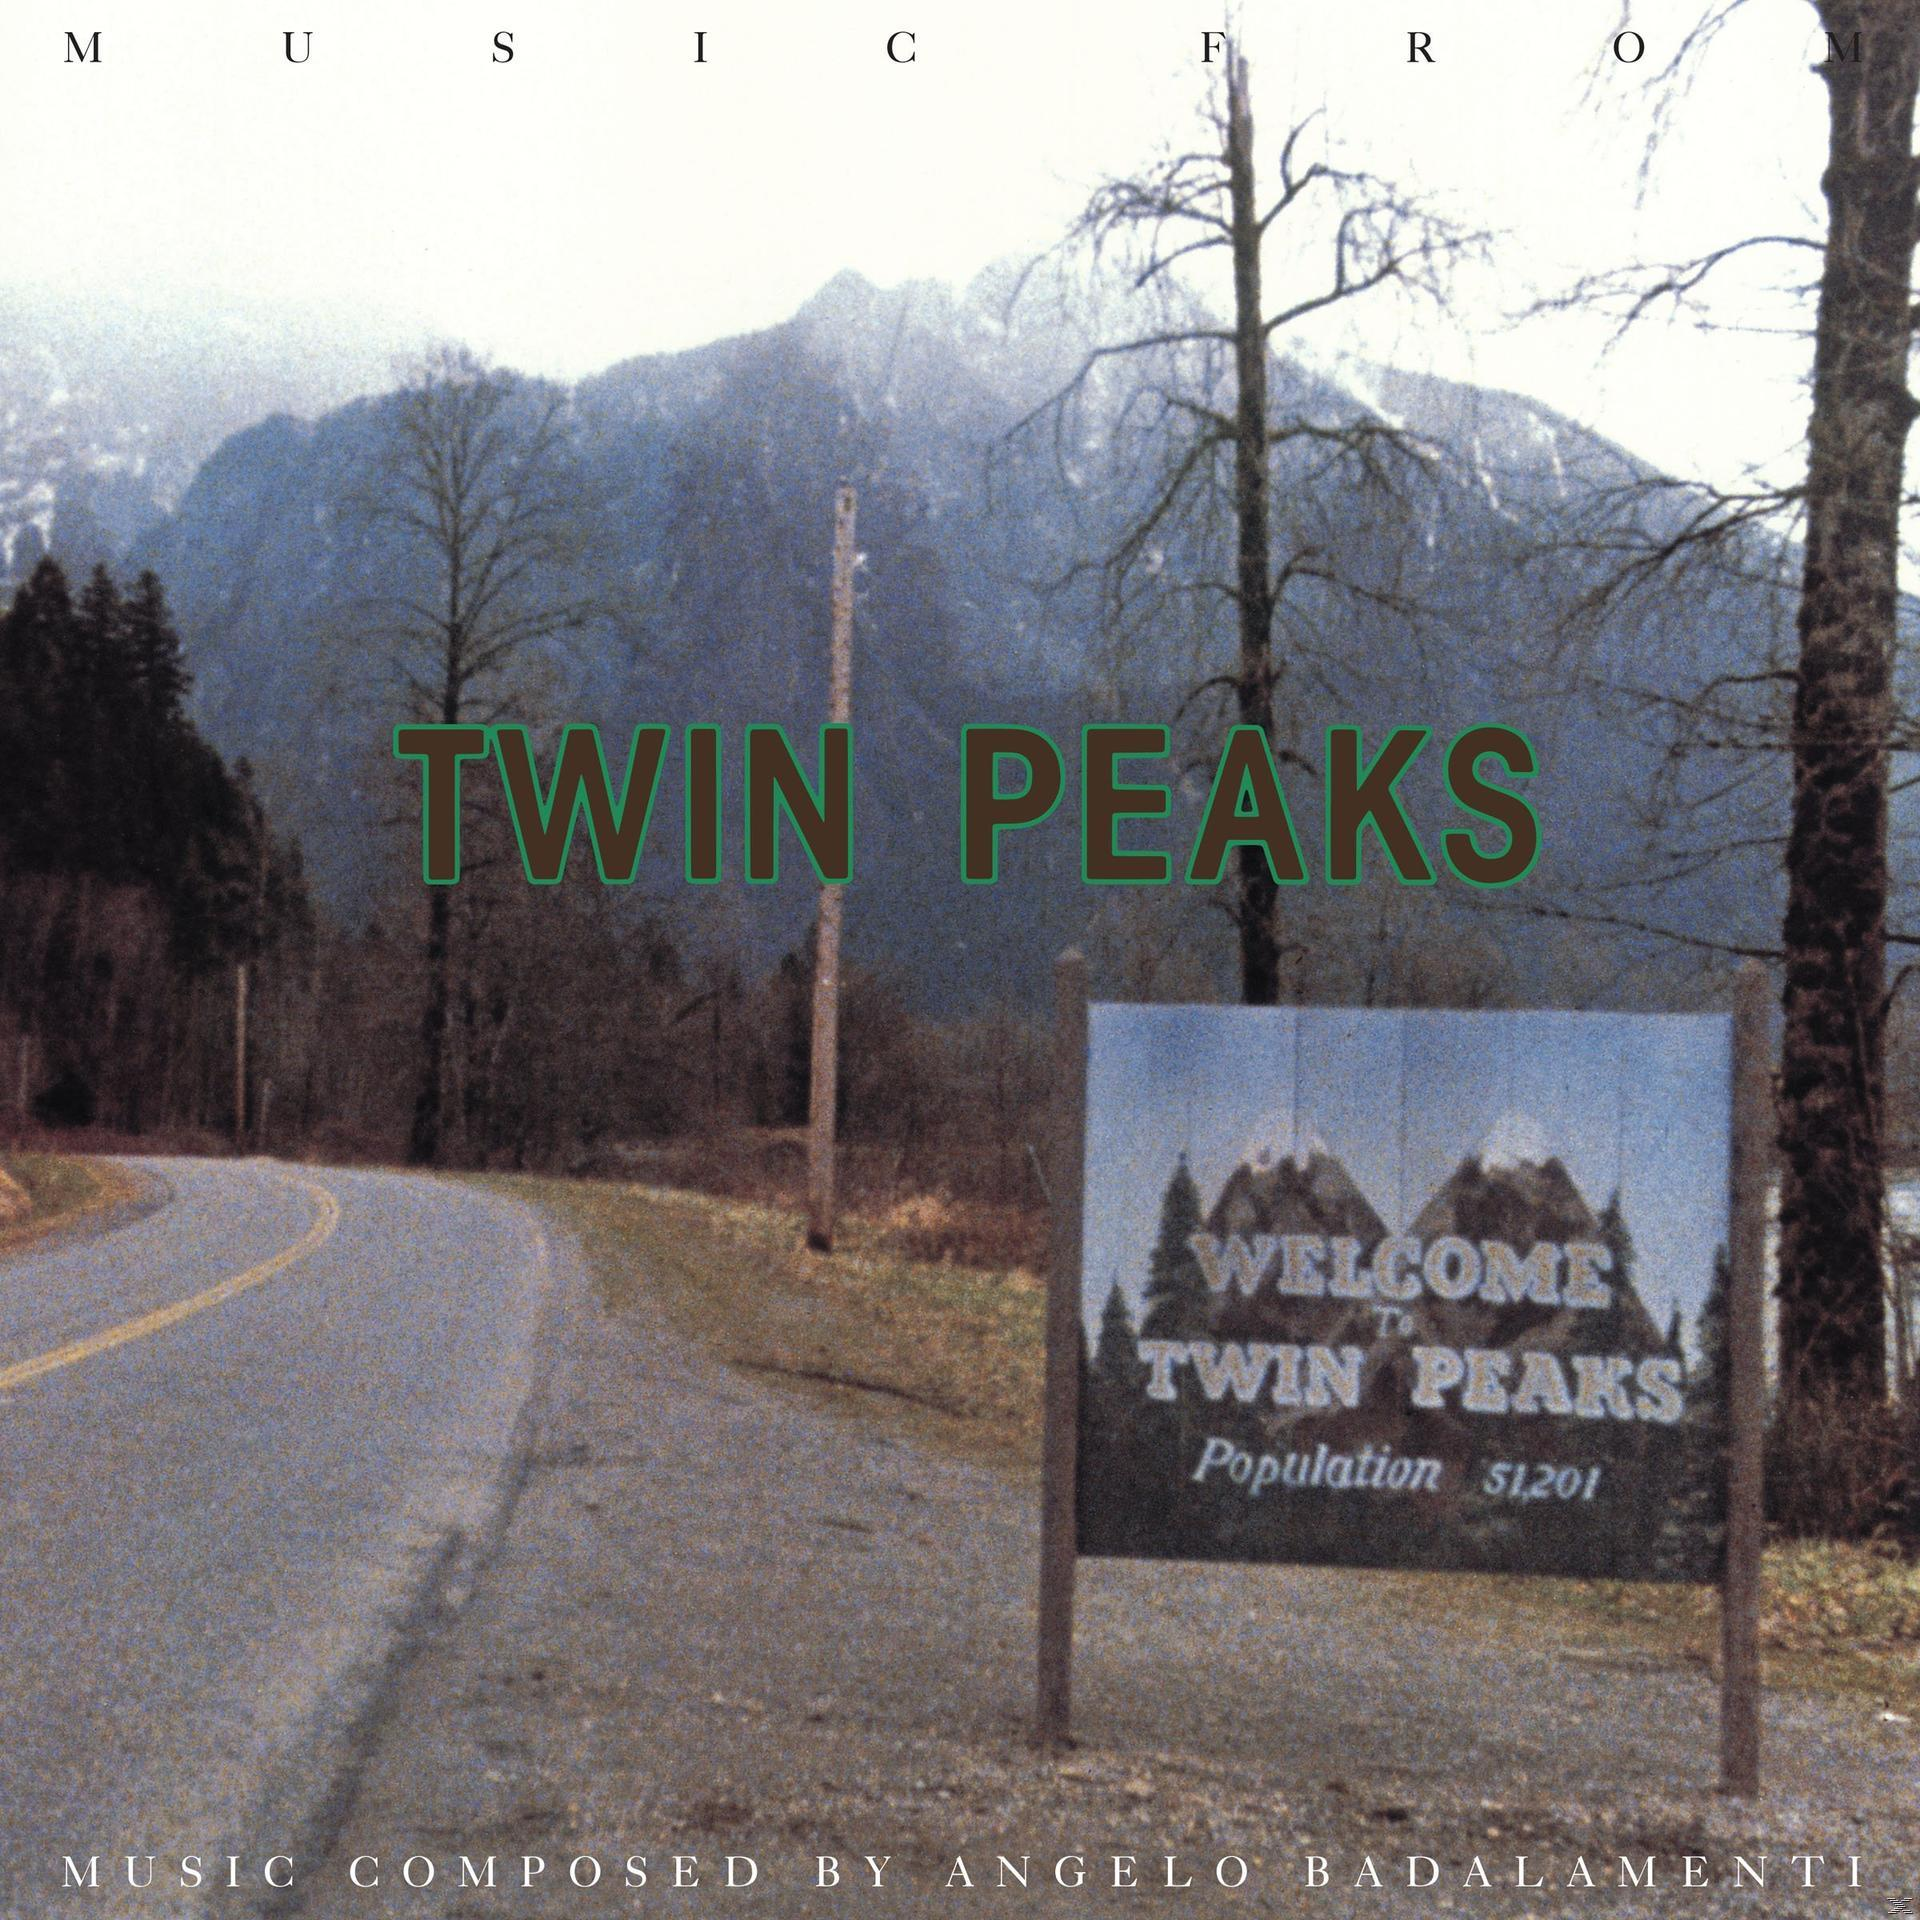 Cruise - From (Vinyl) - Peaks Julee Music Twin